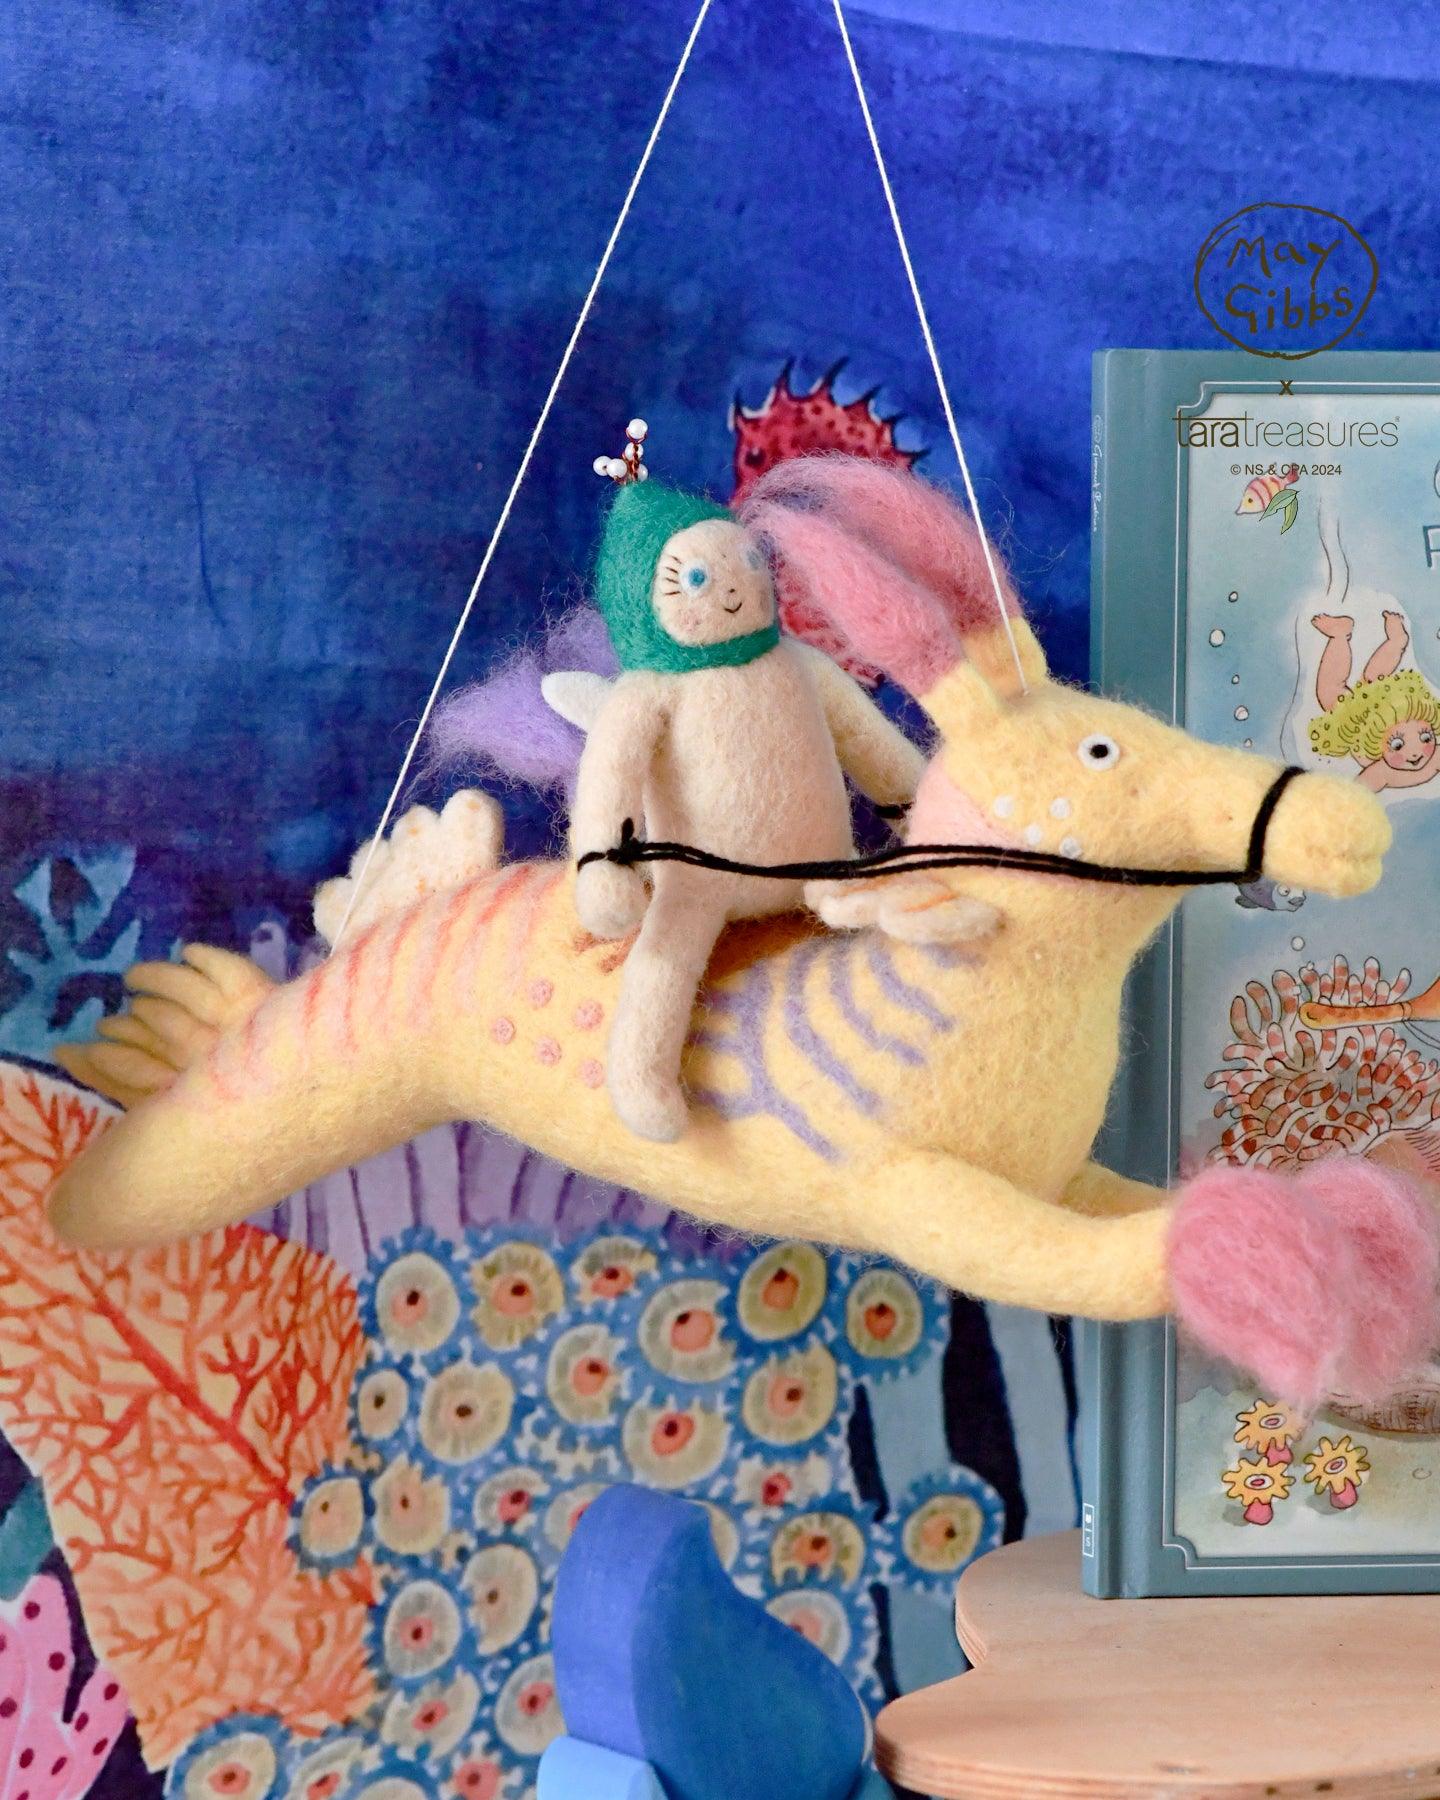 May Gibbs x Tara Treasures - Gumnut Baby Weedy Seadragon Wall Hanging - Tara Treasures